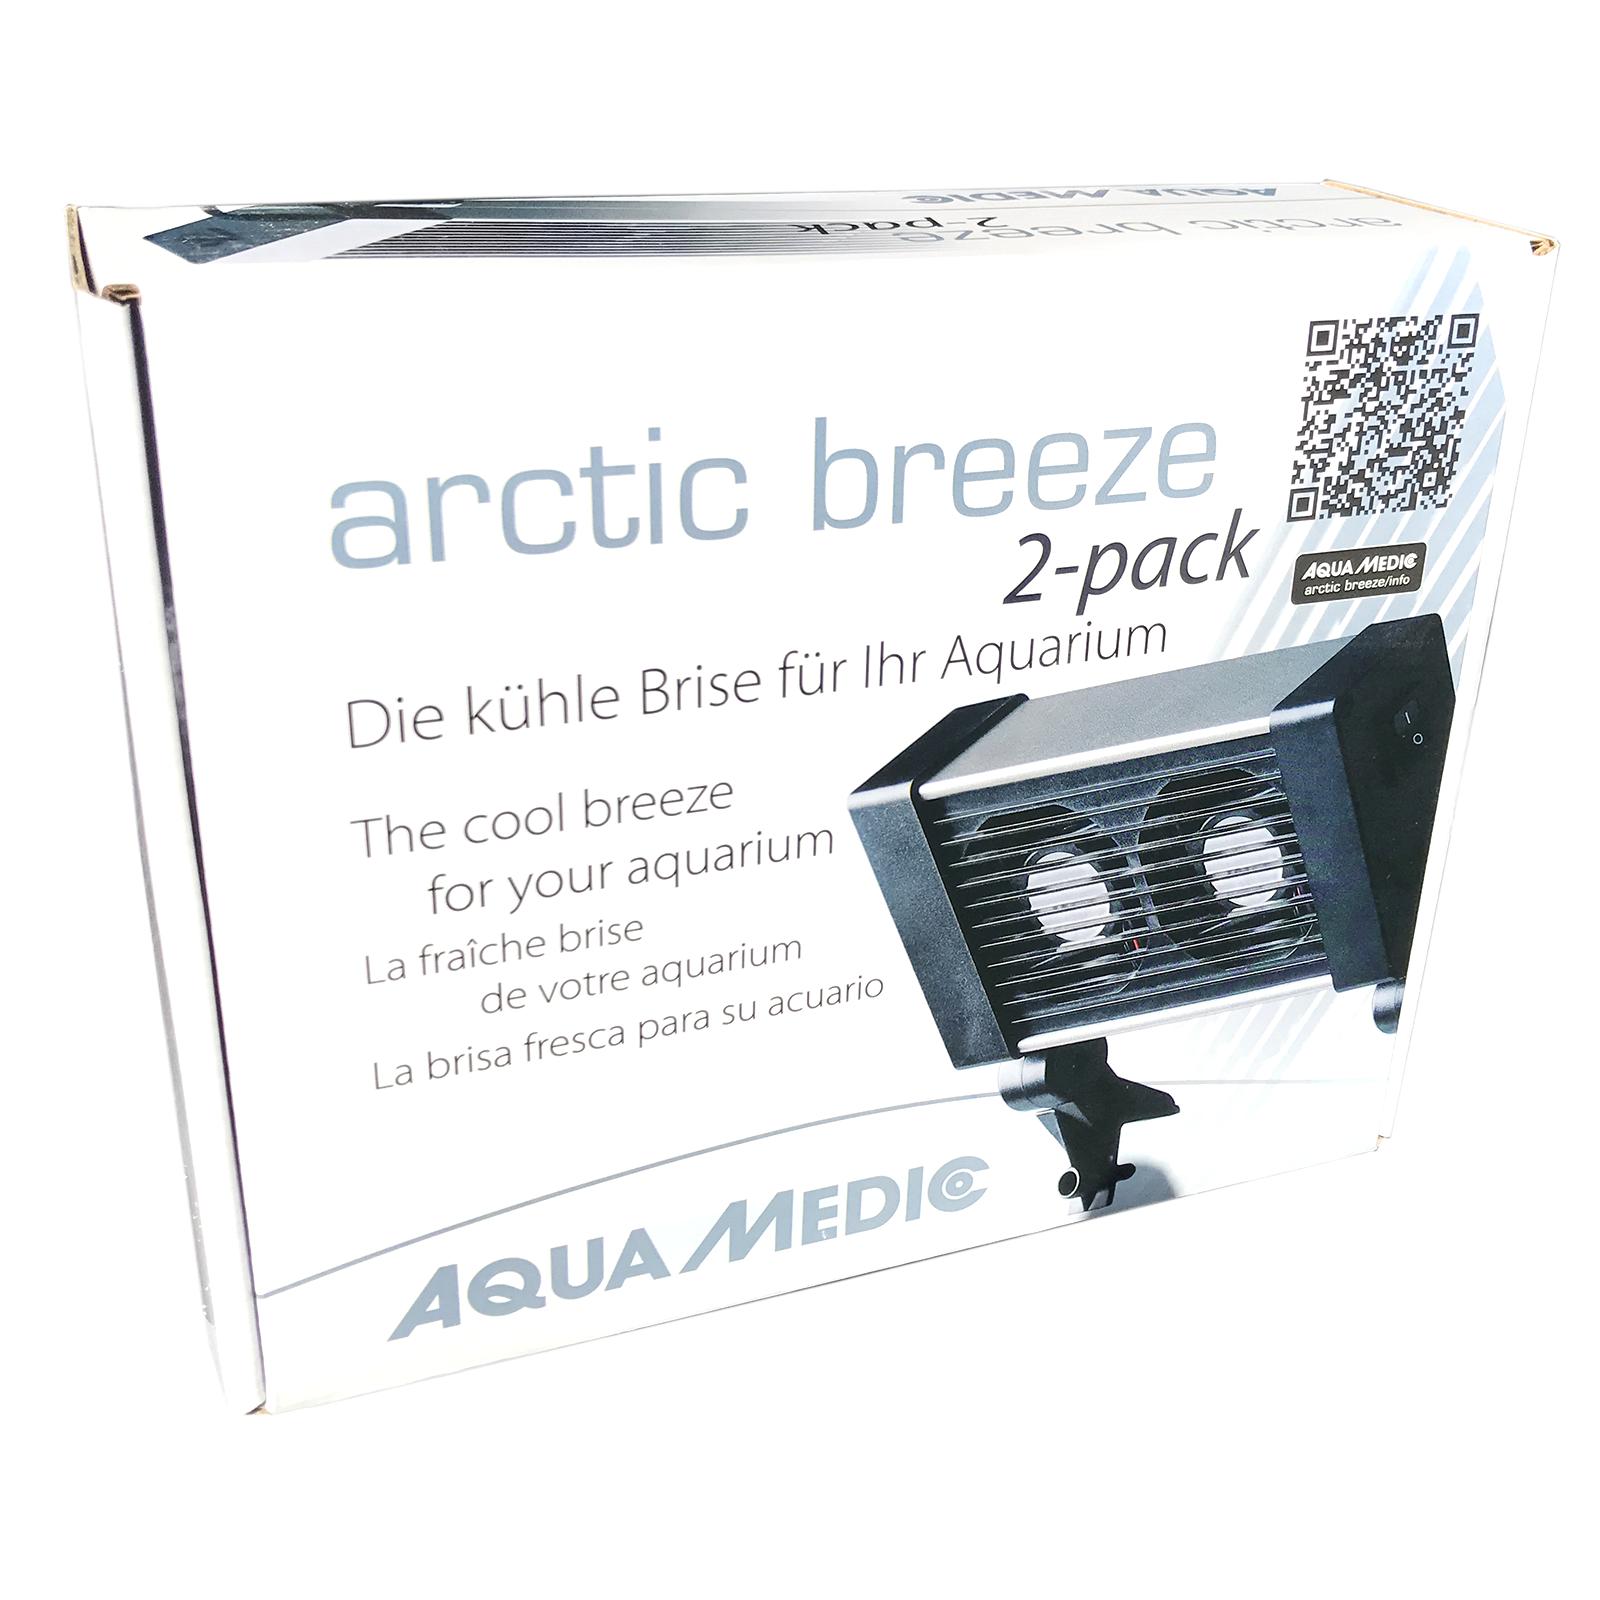 Вентилятор для аквариума Aqua Medic arctic breeze 2-pack 56559